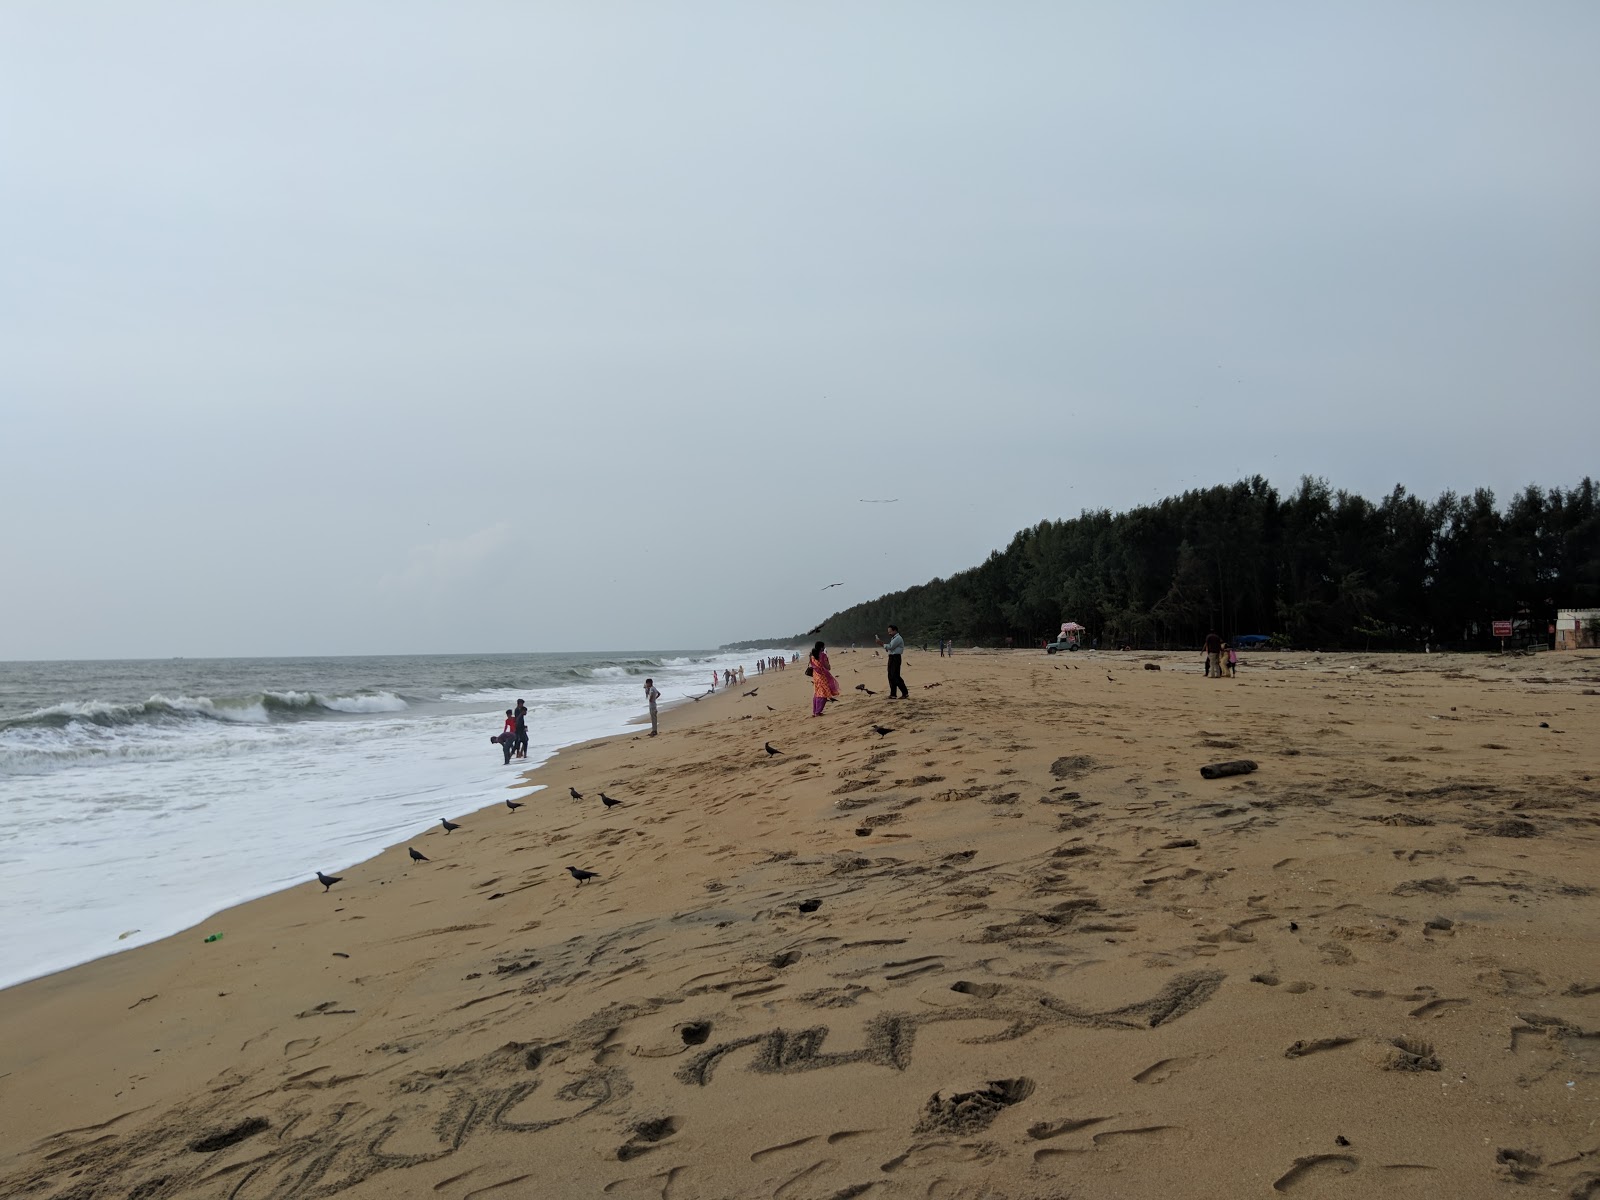 Fotografie cu Munnakal Beach - locul popular printre cunoscătorii de relaxare